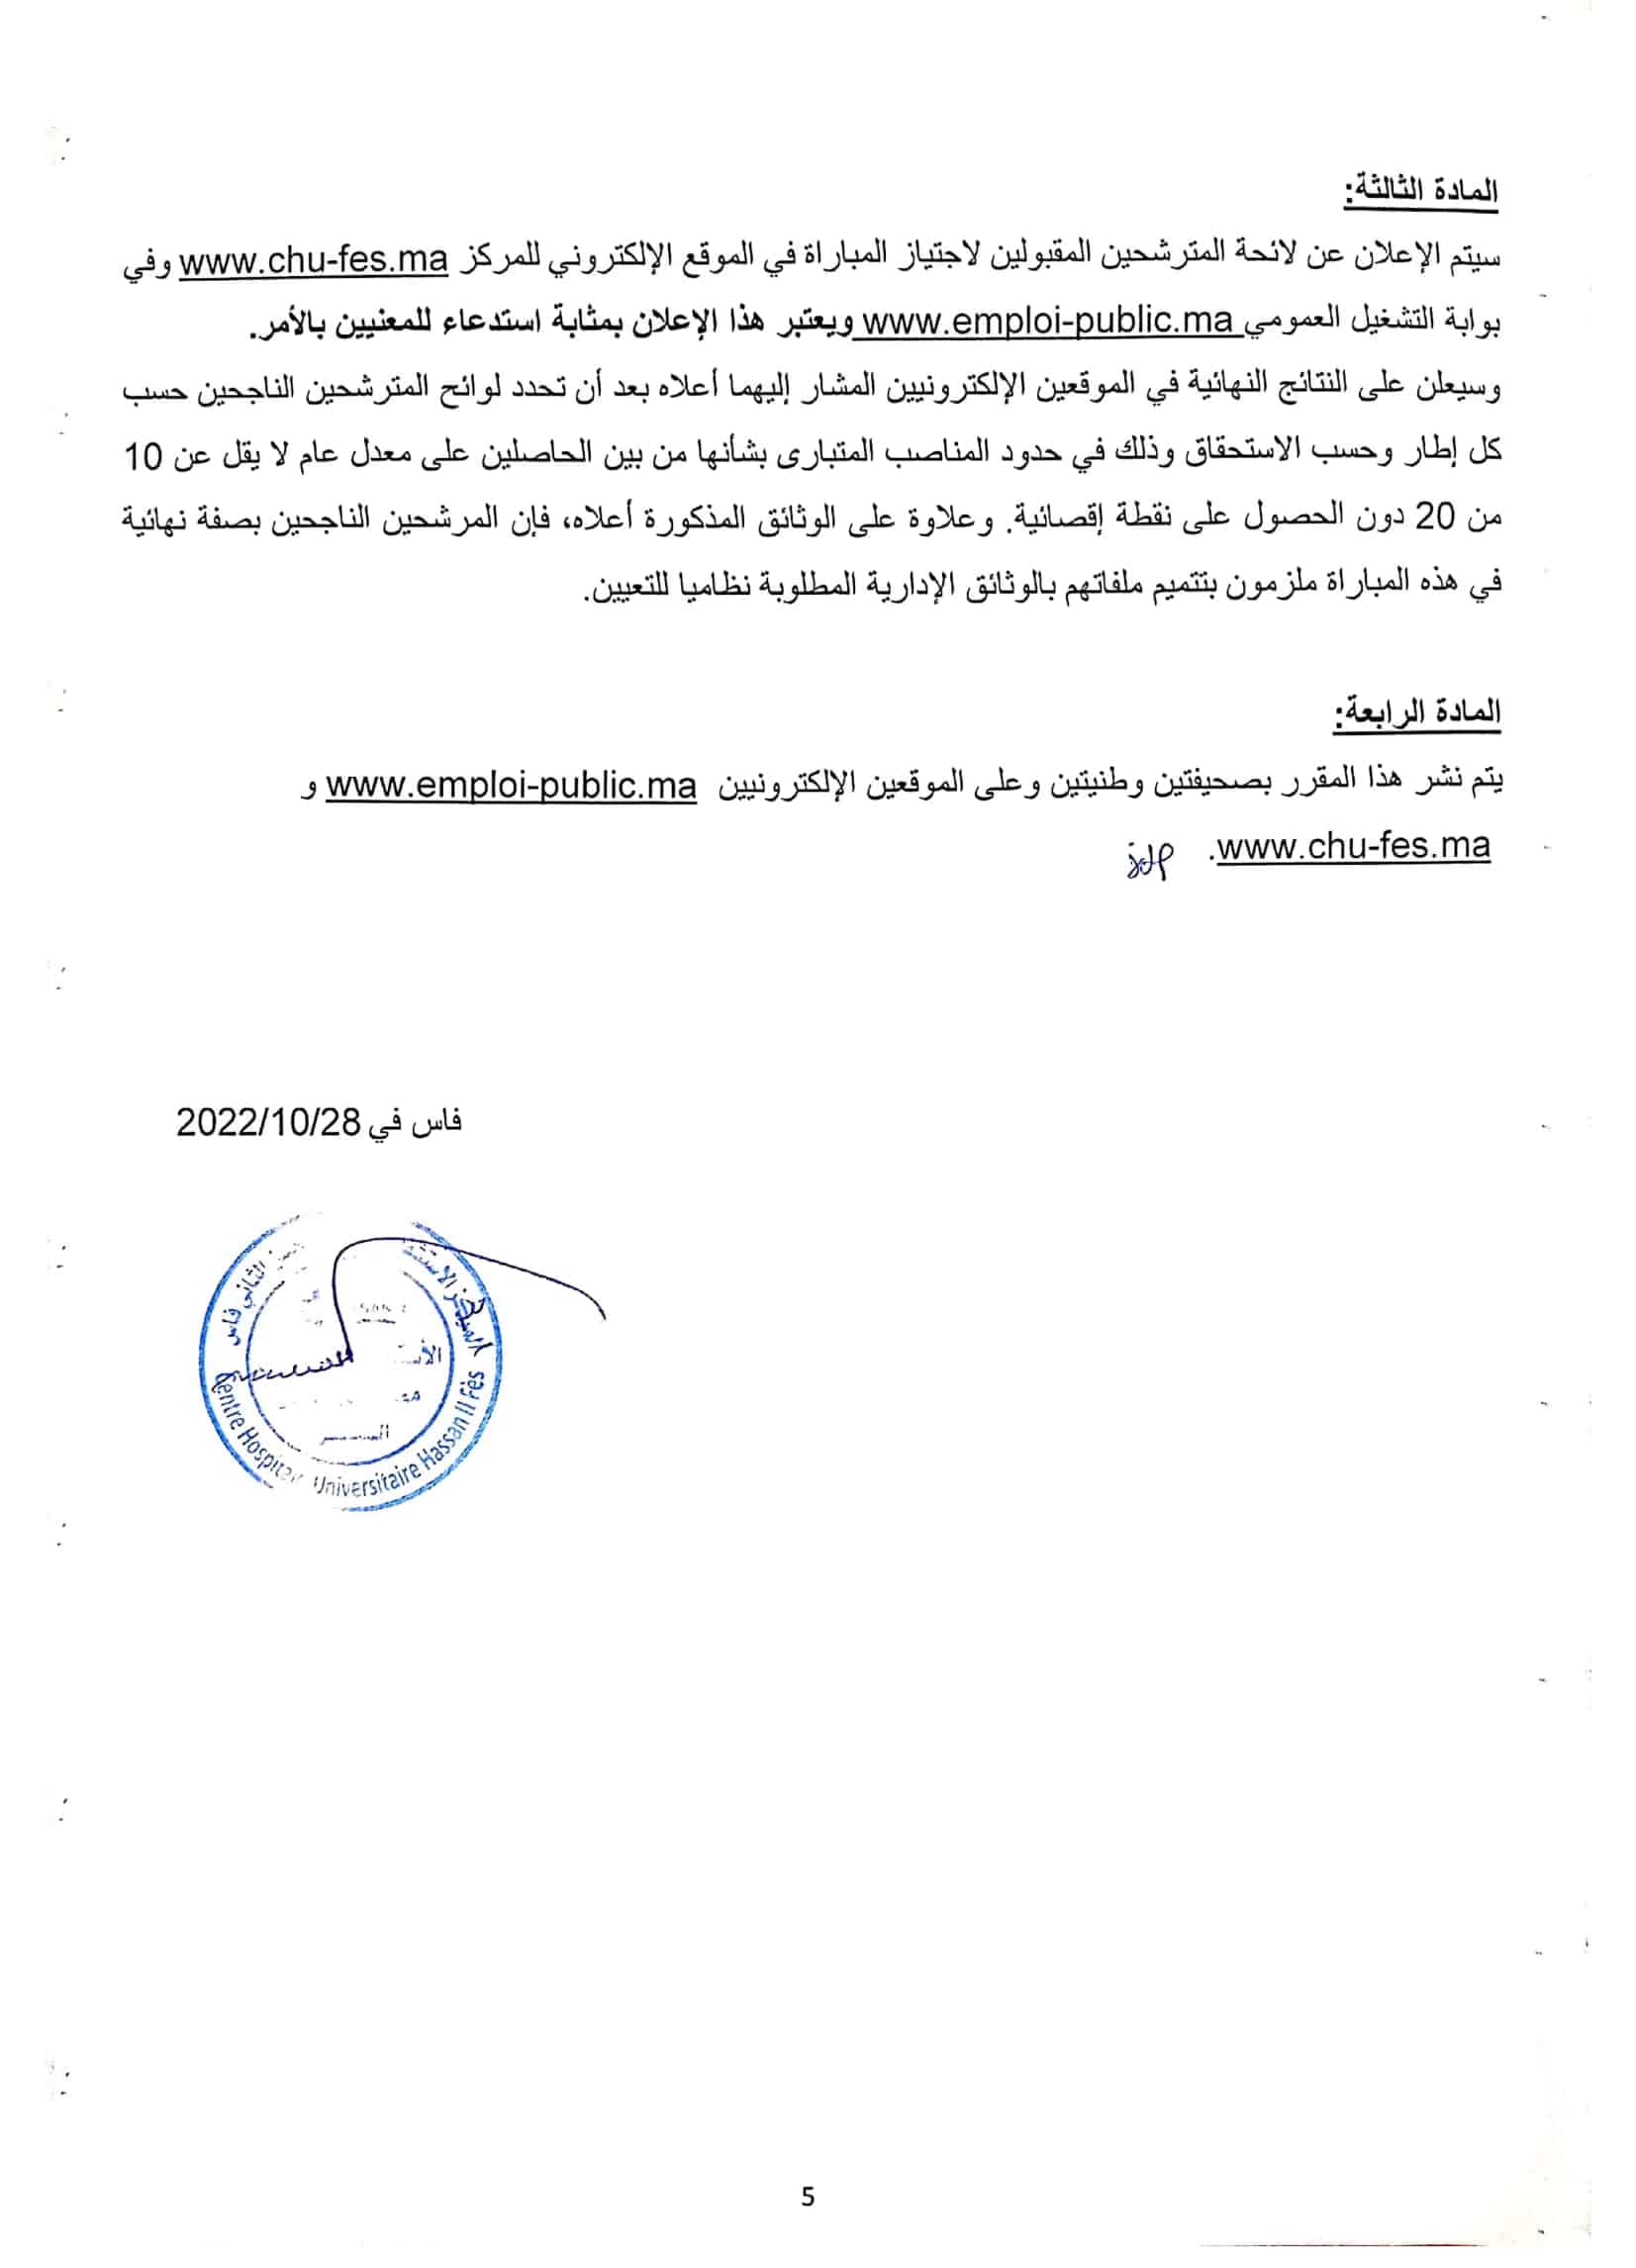 1667232335 660 Concours de Recrutement CHU Hassan II 2022 66 Postes Concours de Recrutement CHU Hassan II 2022 (66 Postes)